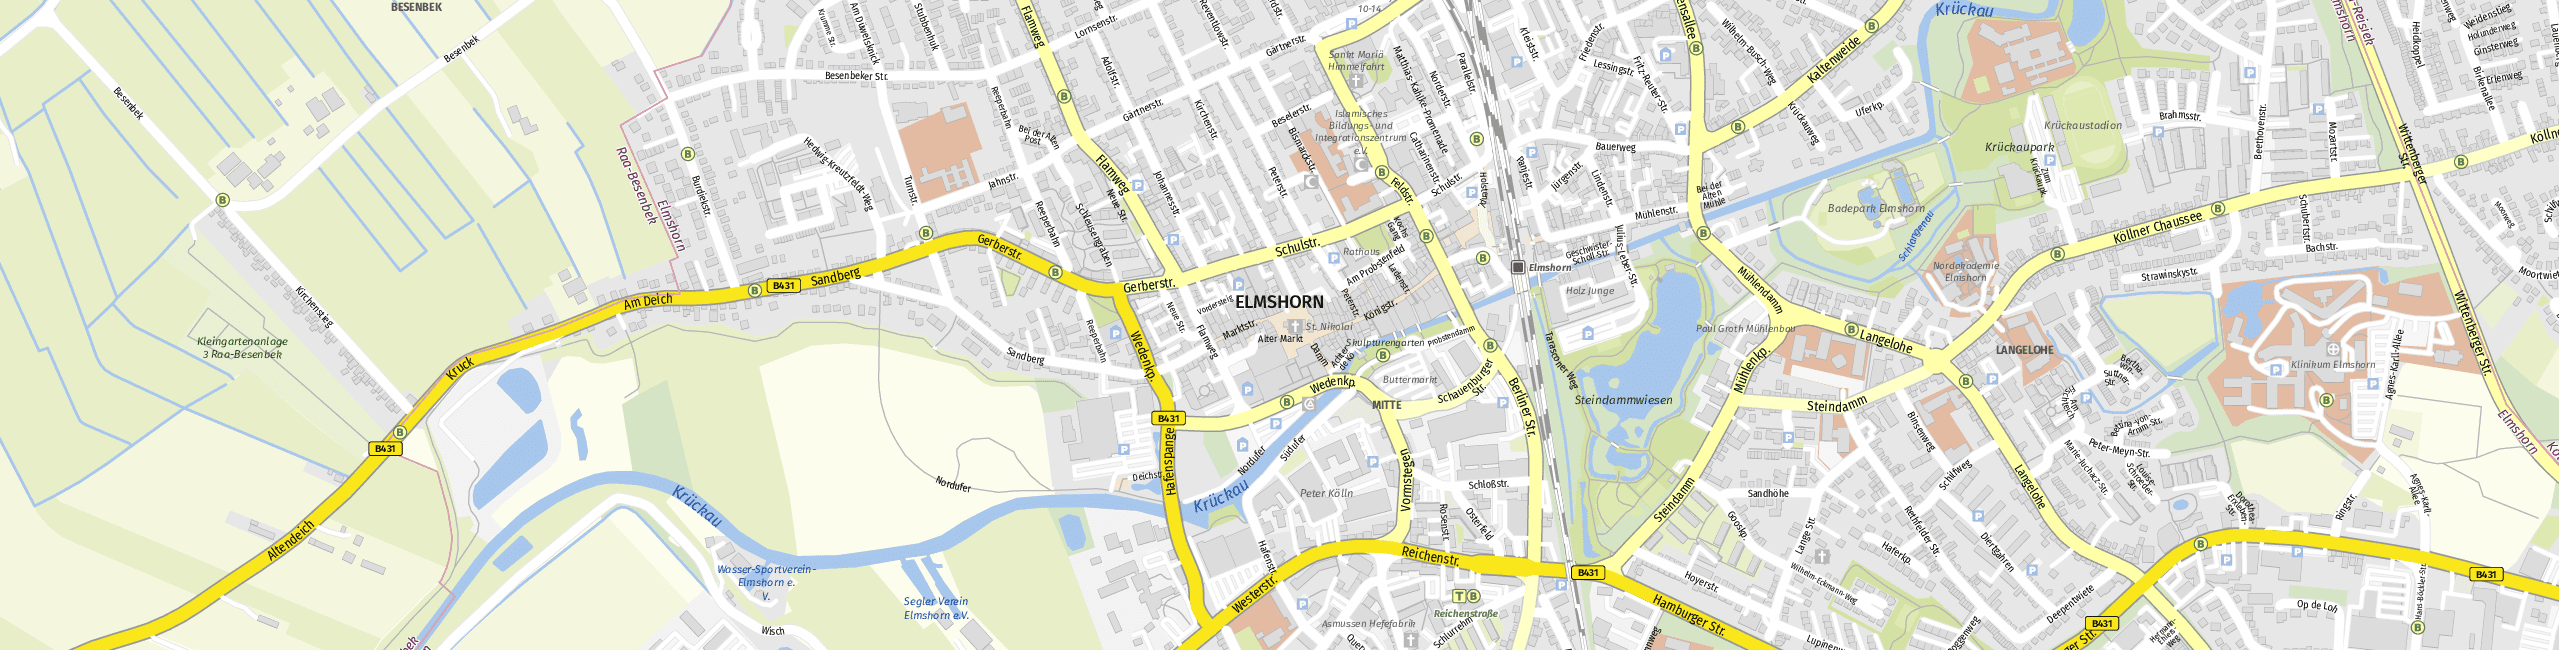 Stadtplan Elmshorn zum Downloaden.